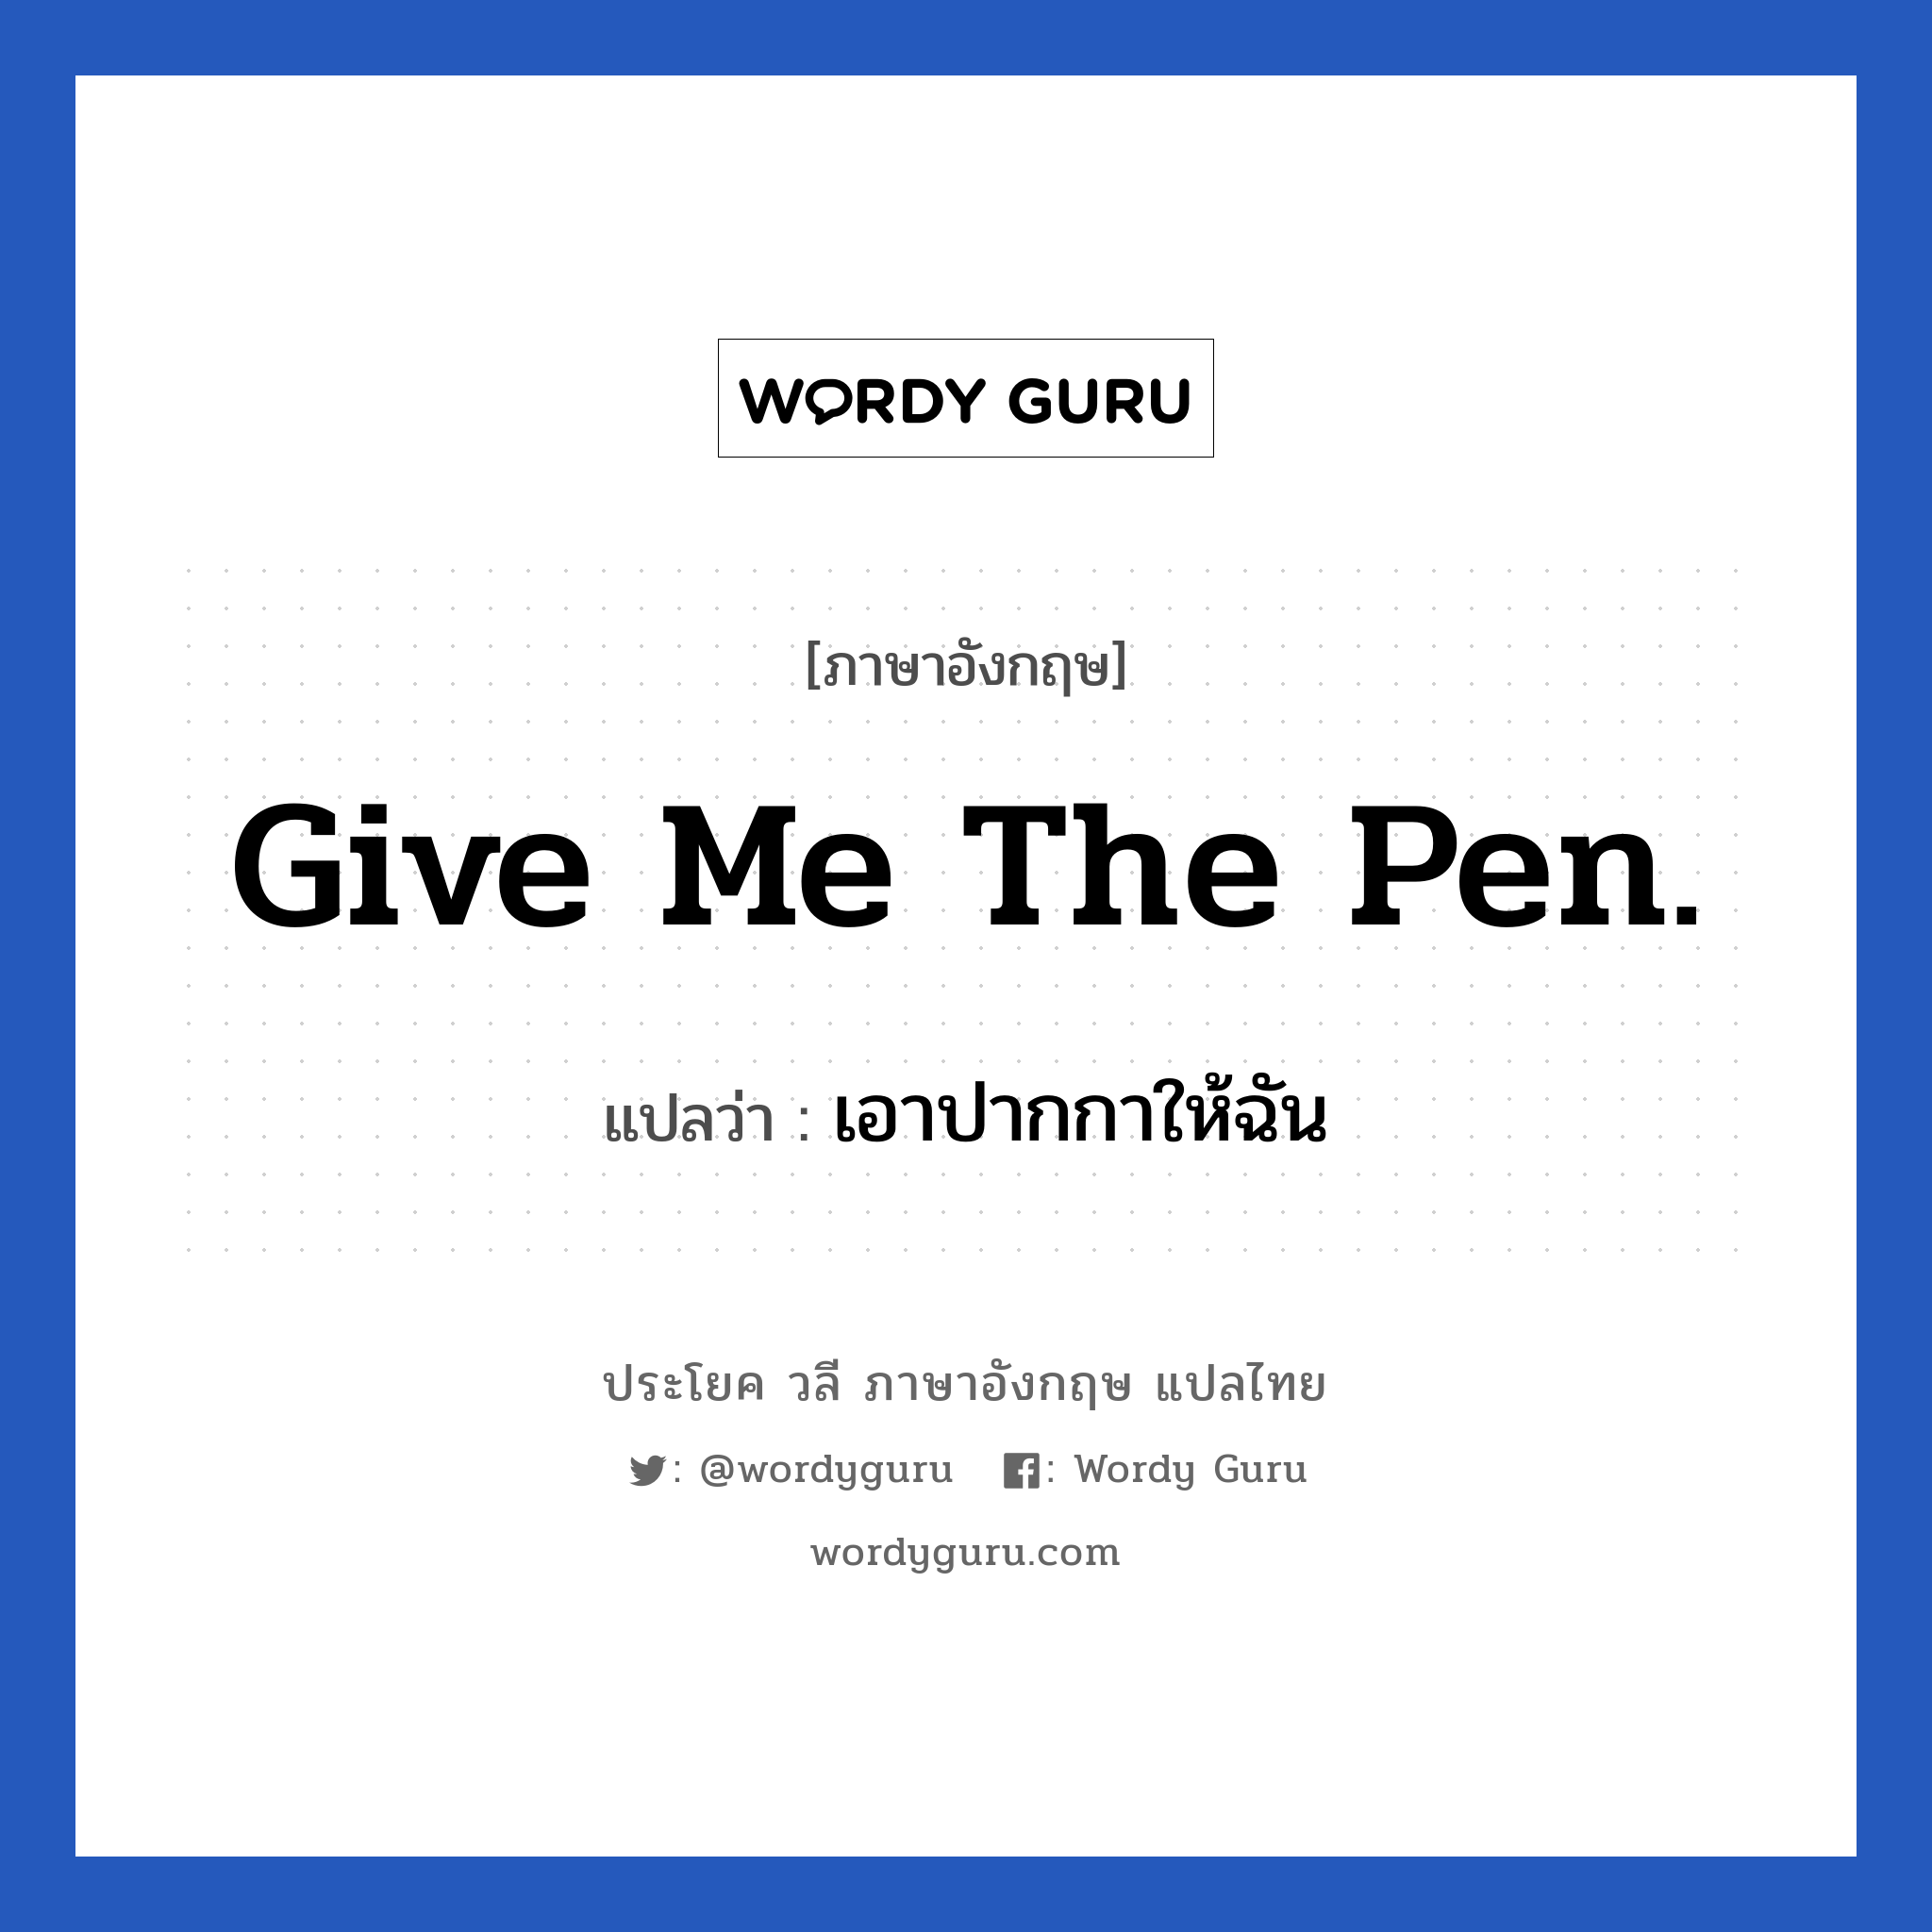 เอาปากกาให้ฉัน ภาษาอังกฤษ?, วลีภาษาอังกฤษ เอาปากกาให้ฉัน แปลว่า Give me the pen.